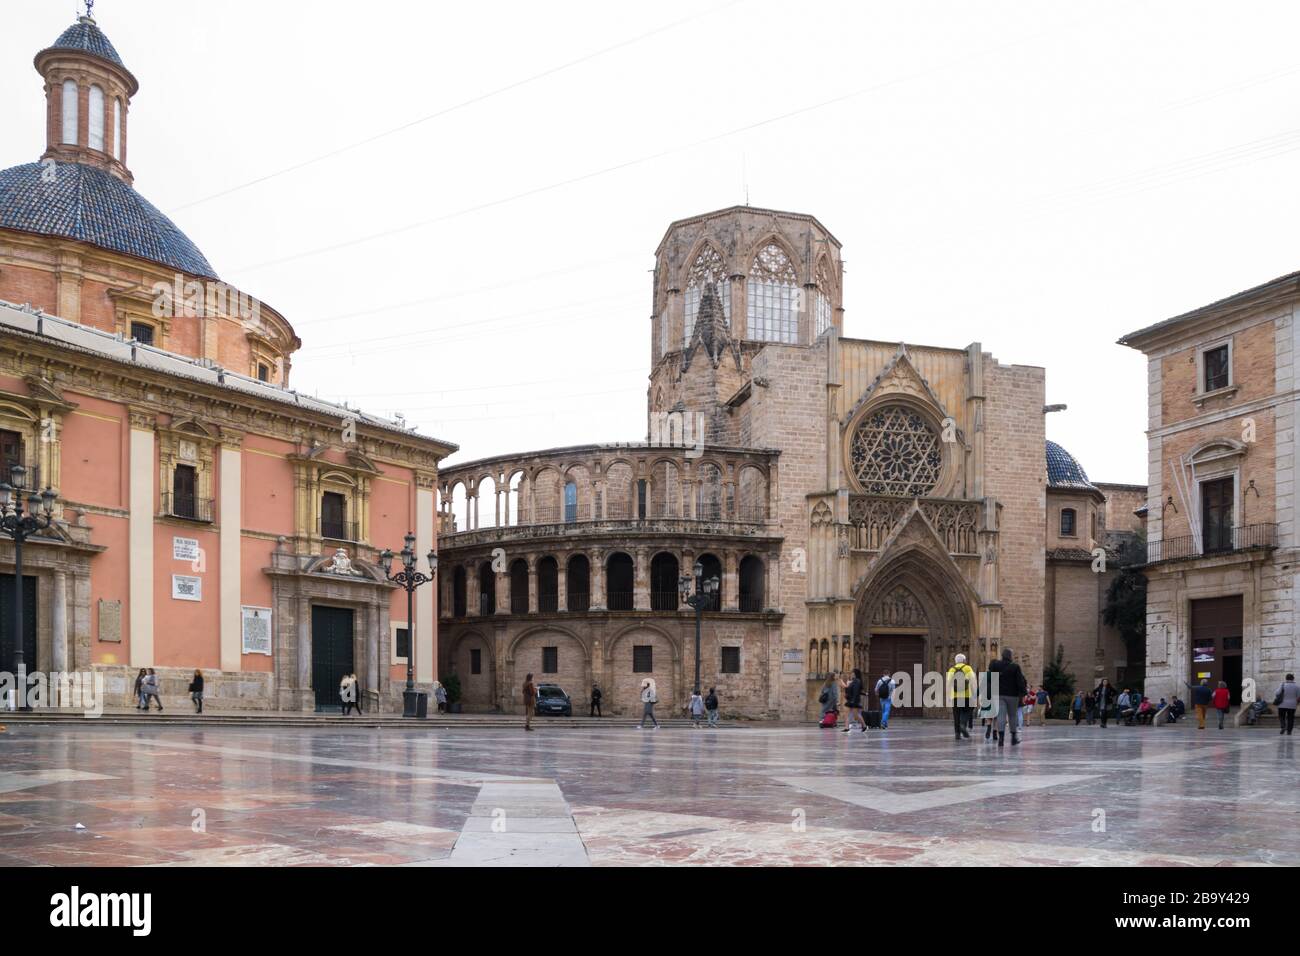 Valencia, Spagna - 12 febbraio 2020: Veduta della Cattedrale di Santa Maria e della Basilica della Virgen de los Desamparados in Plaza de la Virgen Foto Stock